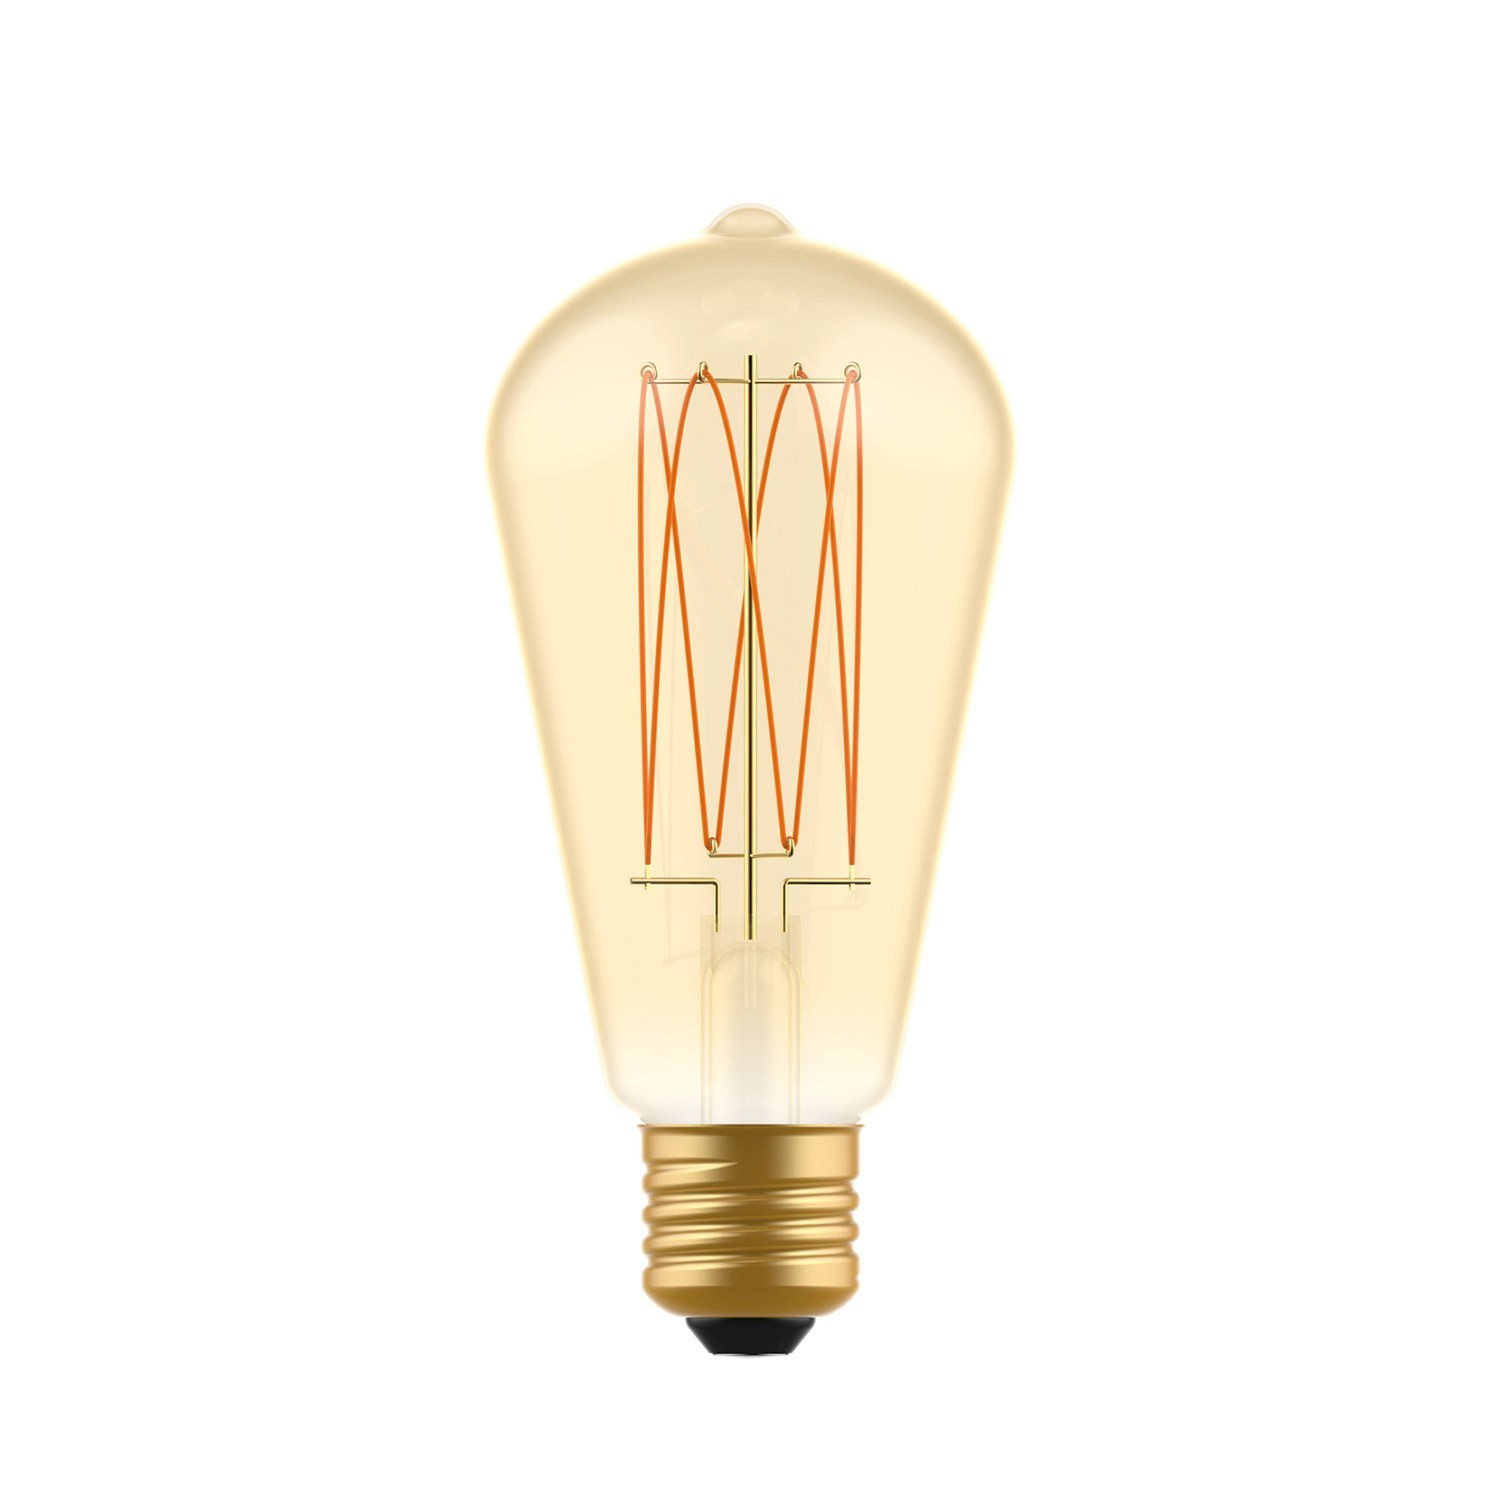 Ampoule dorée LED C54 Carbon Line Filament Cage Edison ST64 7W E27 Dimmable 2700K